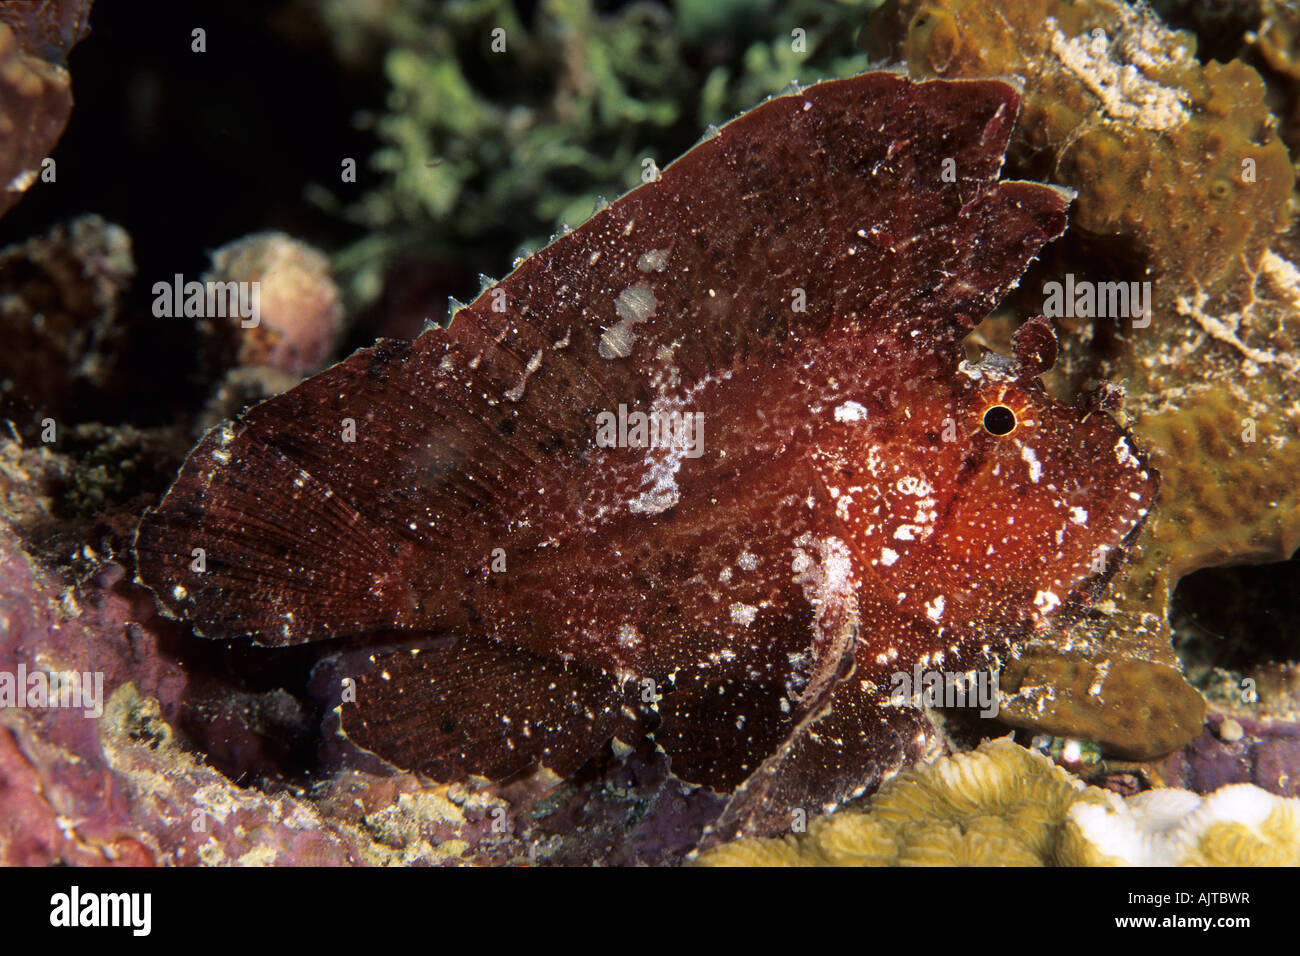 Taenianotus triacanthus leaf scorpionfish Pacifique Micronésie Palau Banque D'Images